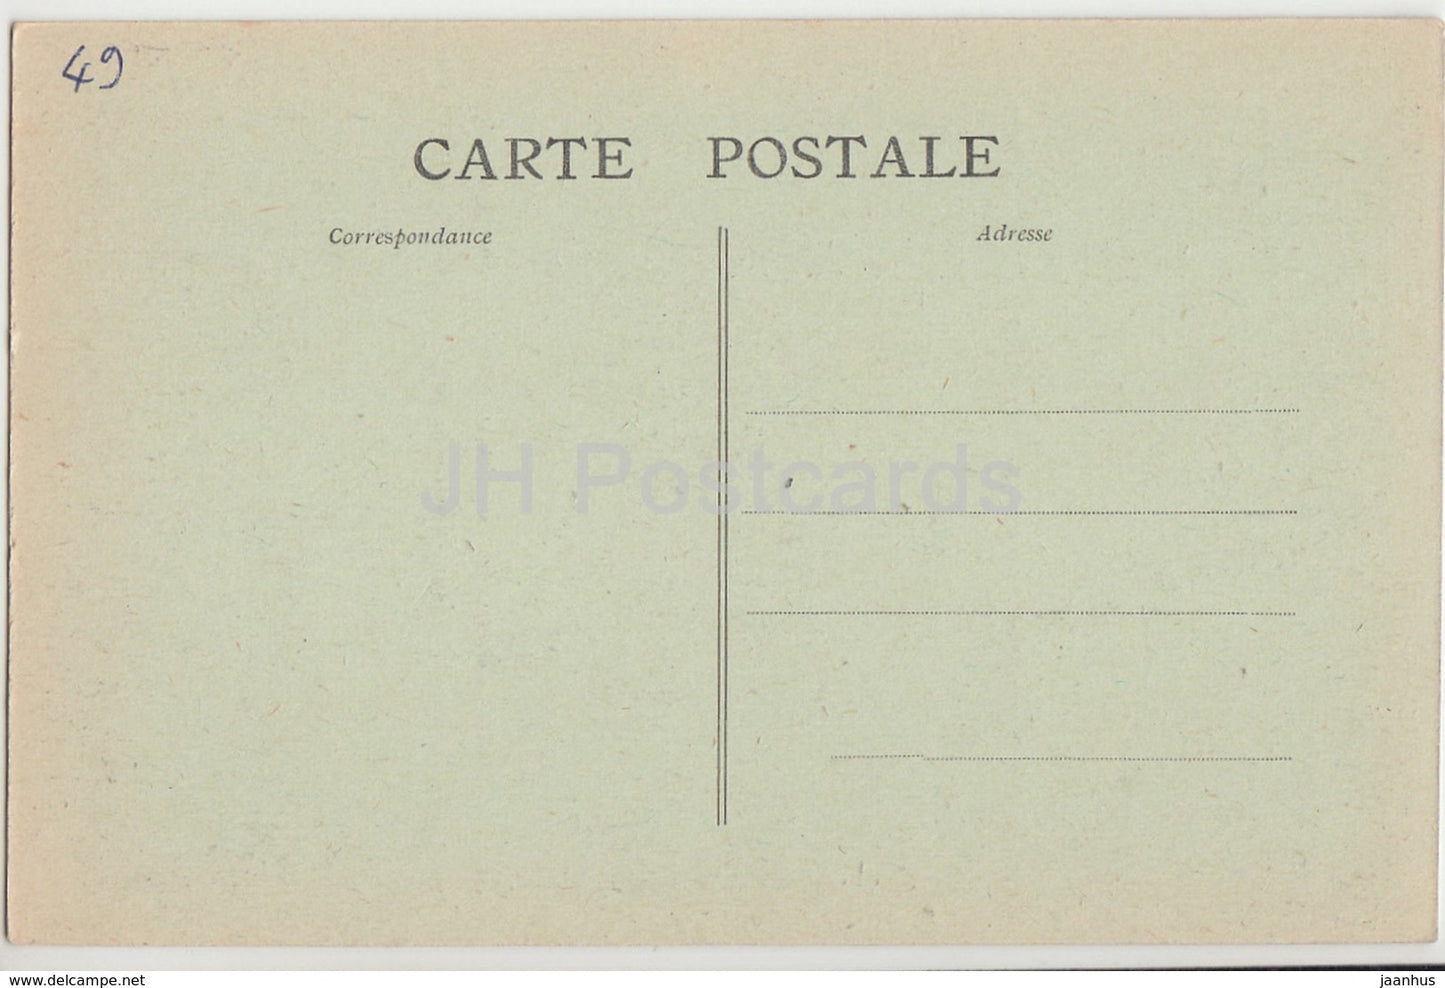 Brain Sur Longuenee - Chateau de Montergon - castle - 5 - old postcard - France - unused